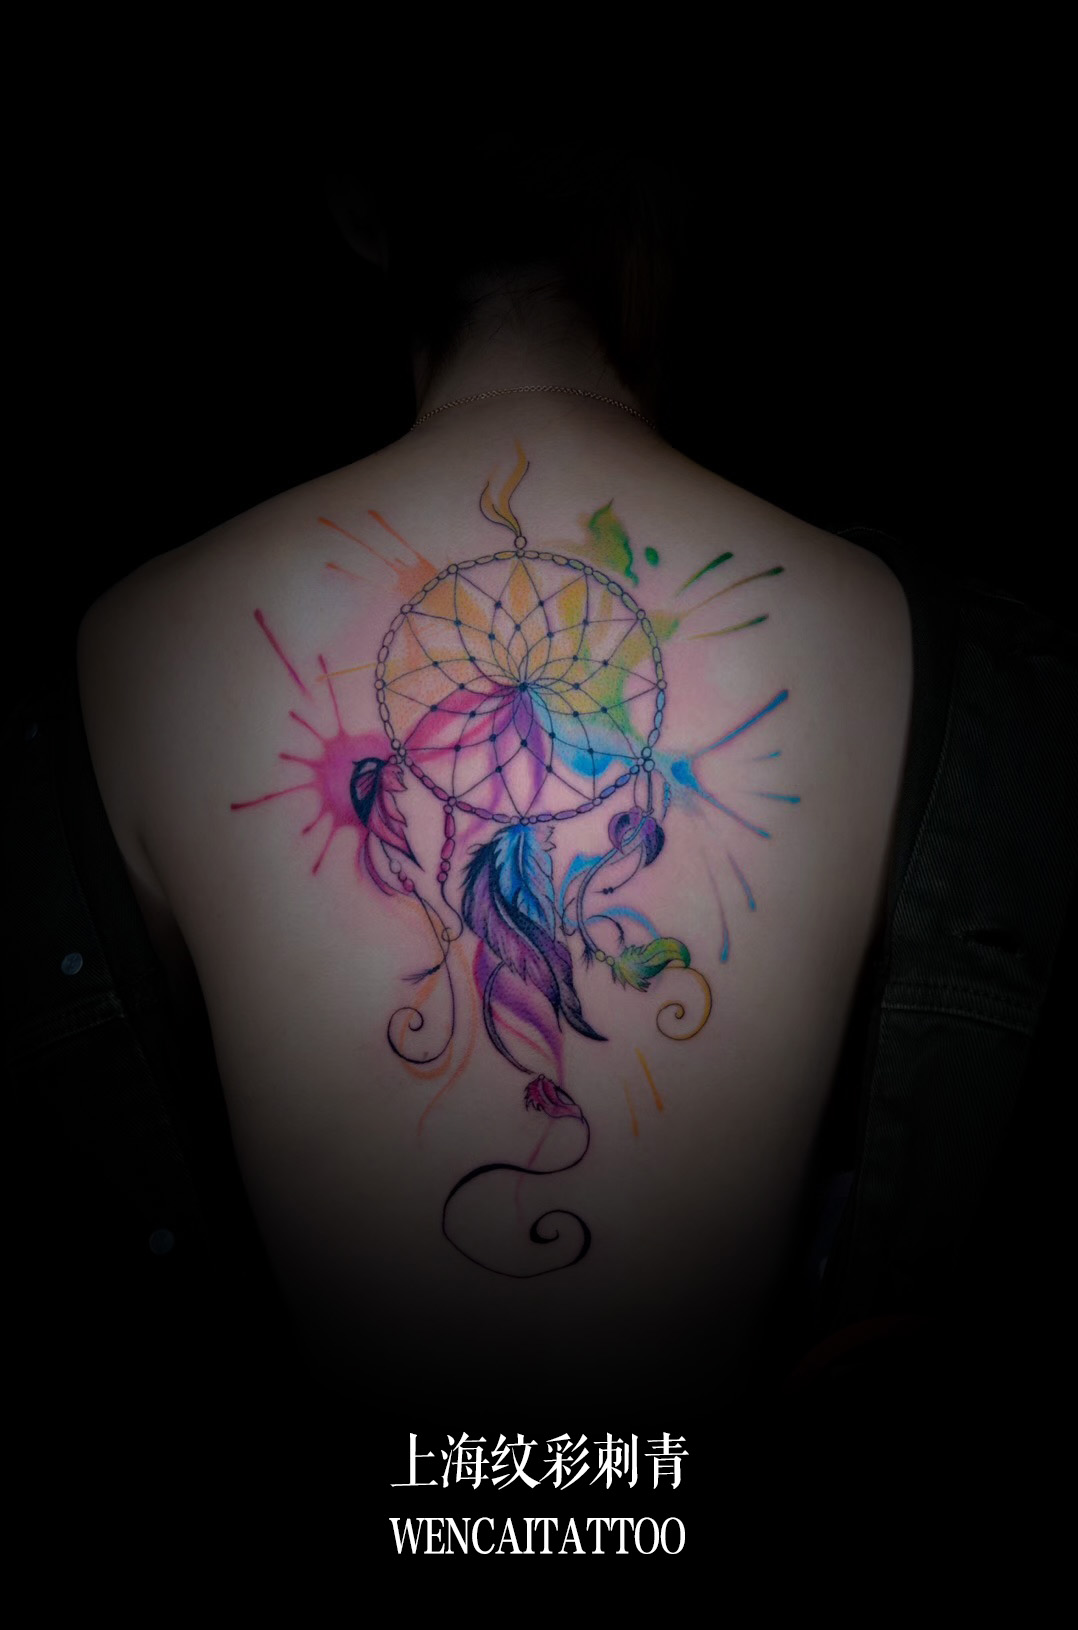 上海闵小姐后背彩色的捕梦网纹身图案